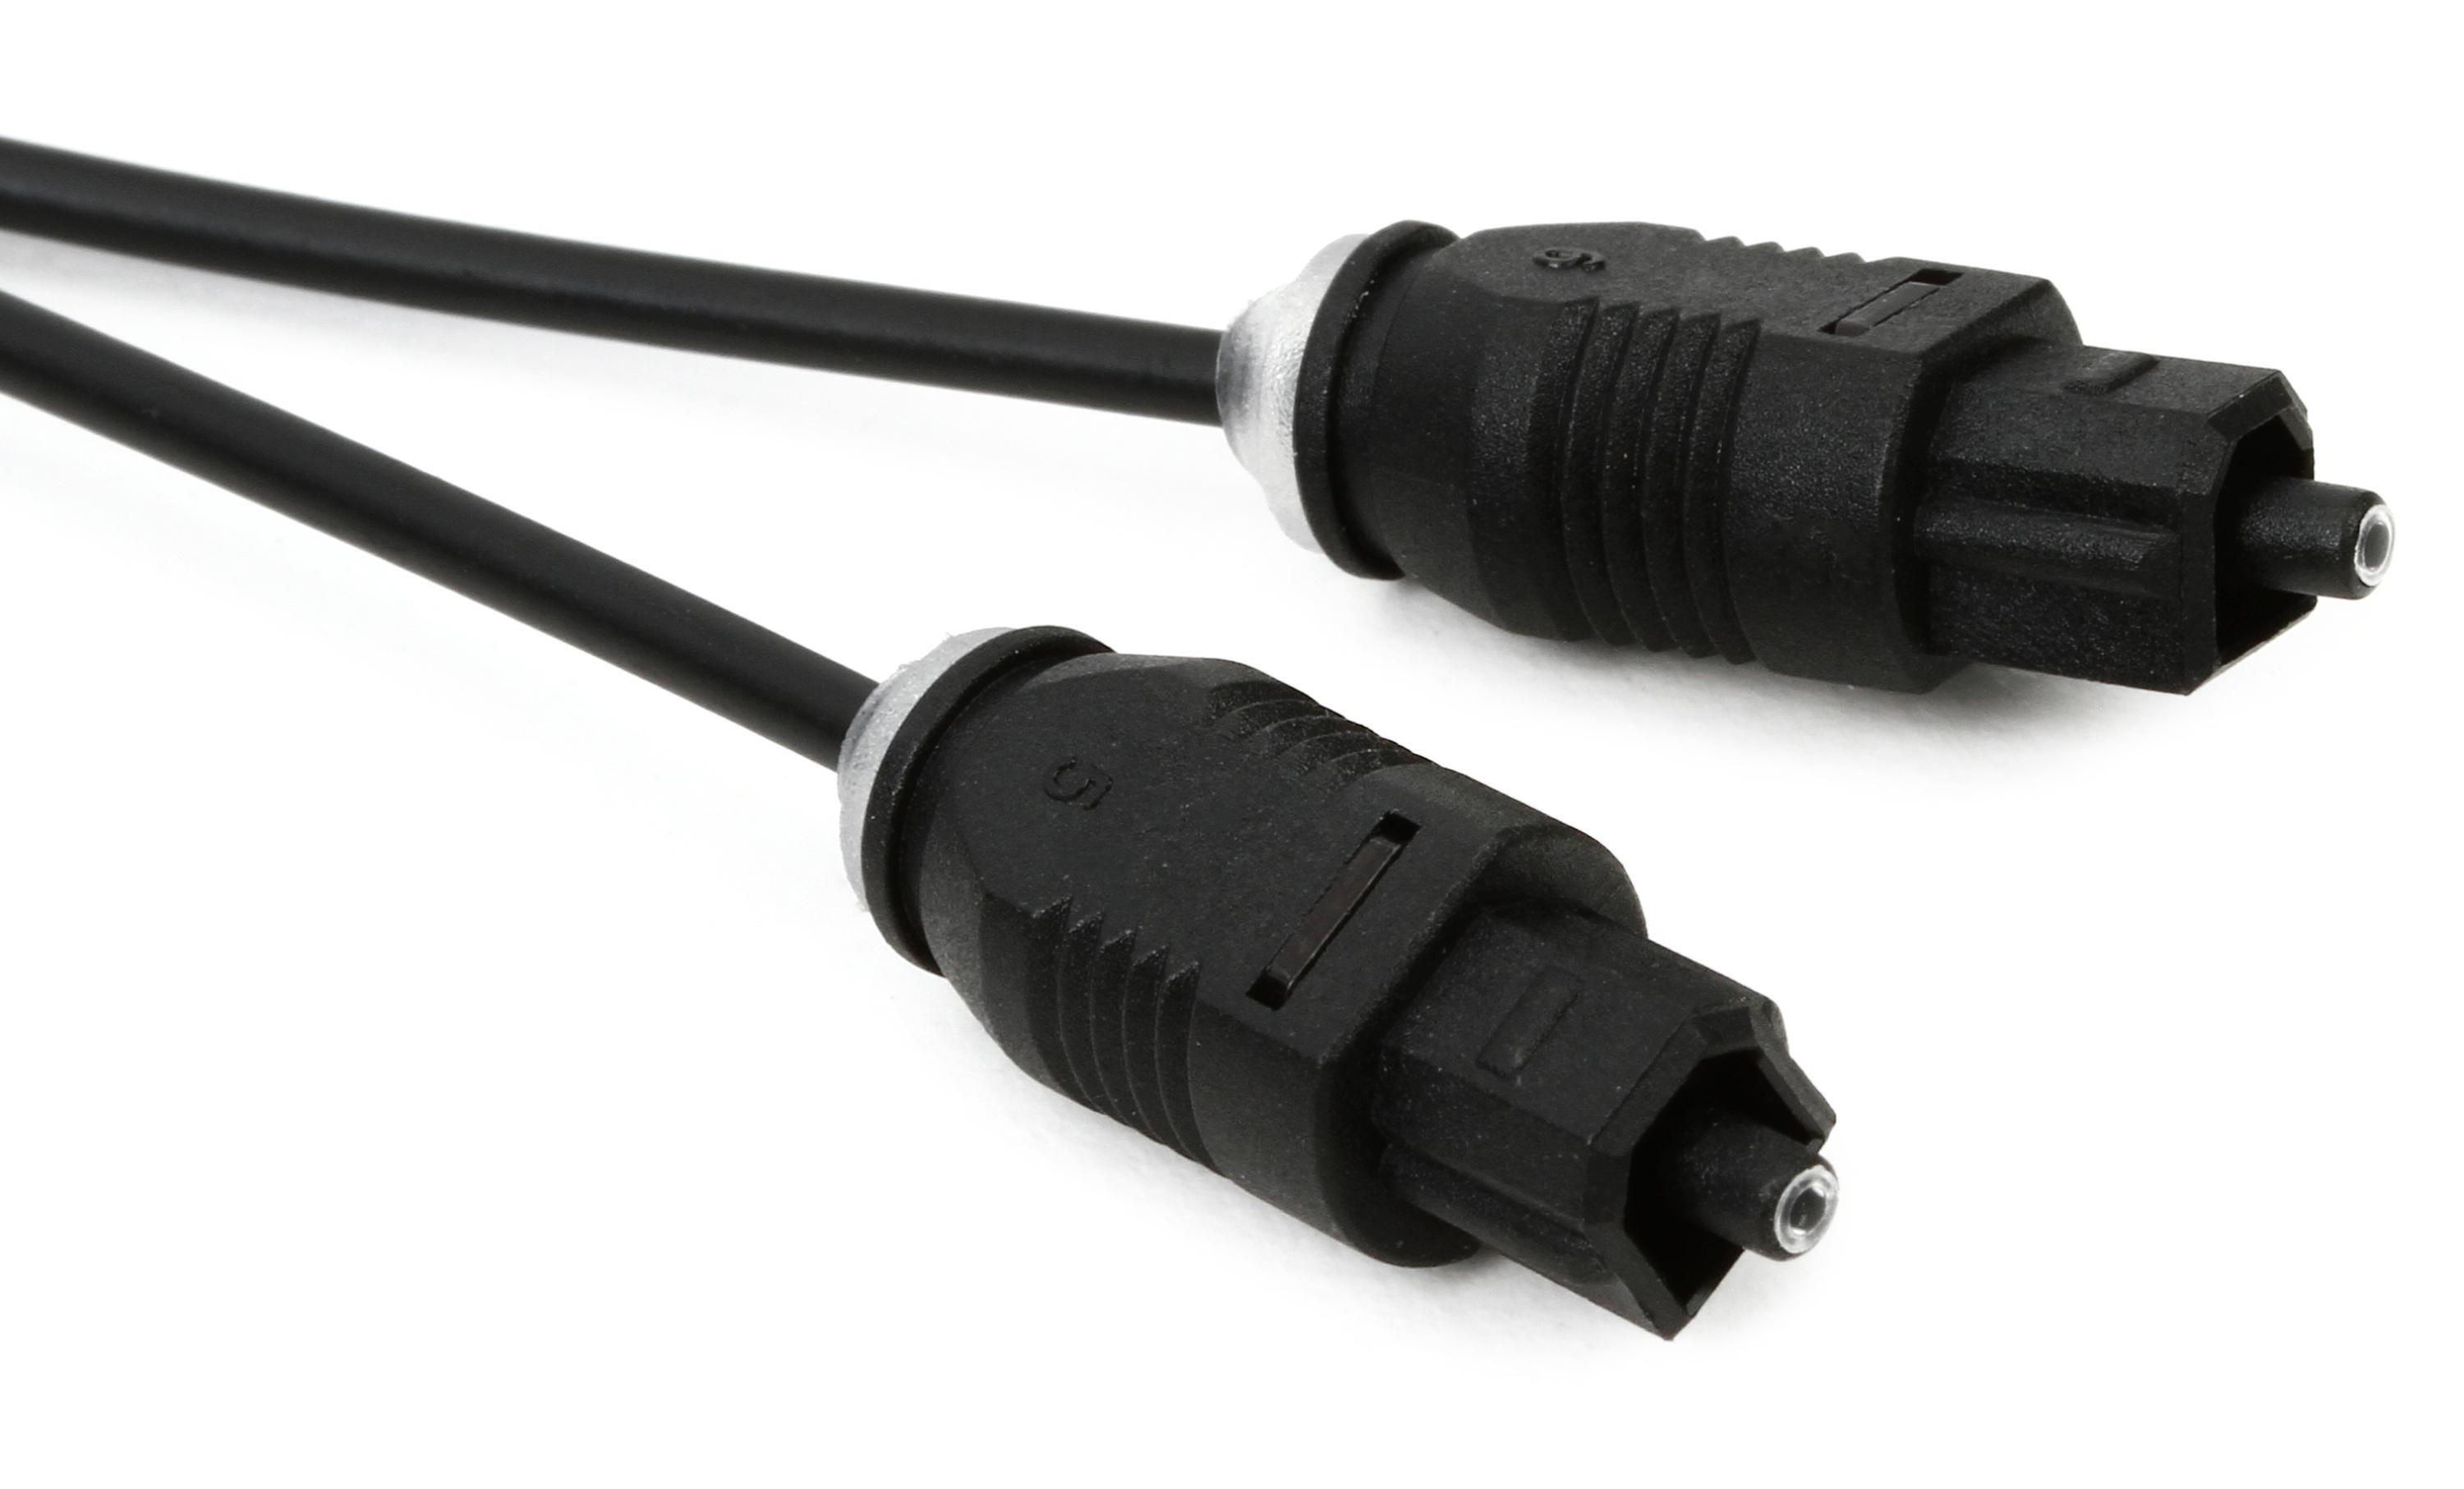 Cable Fibra Optica Digital Toslink Plug 2 Metros Premium